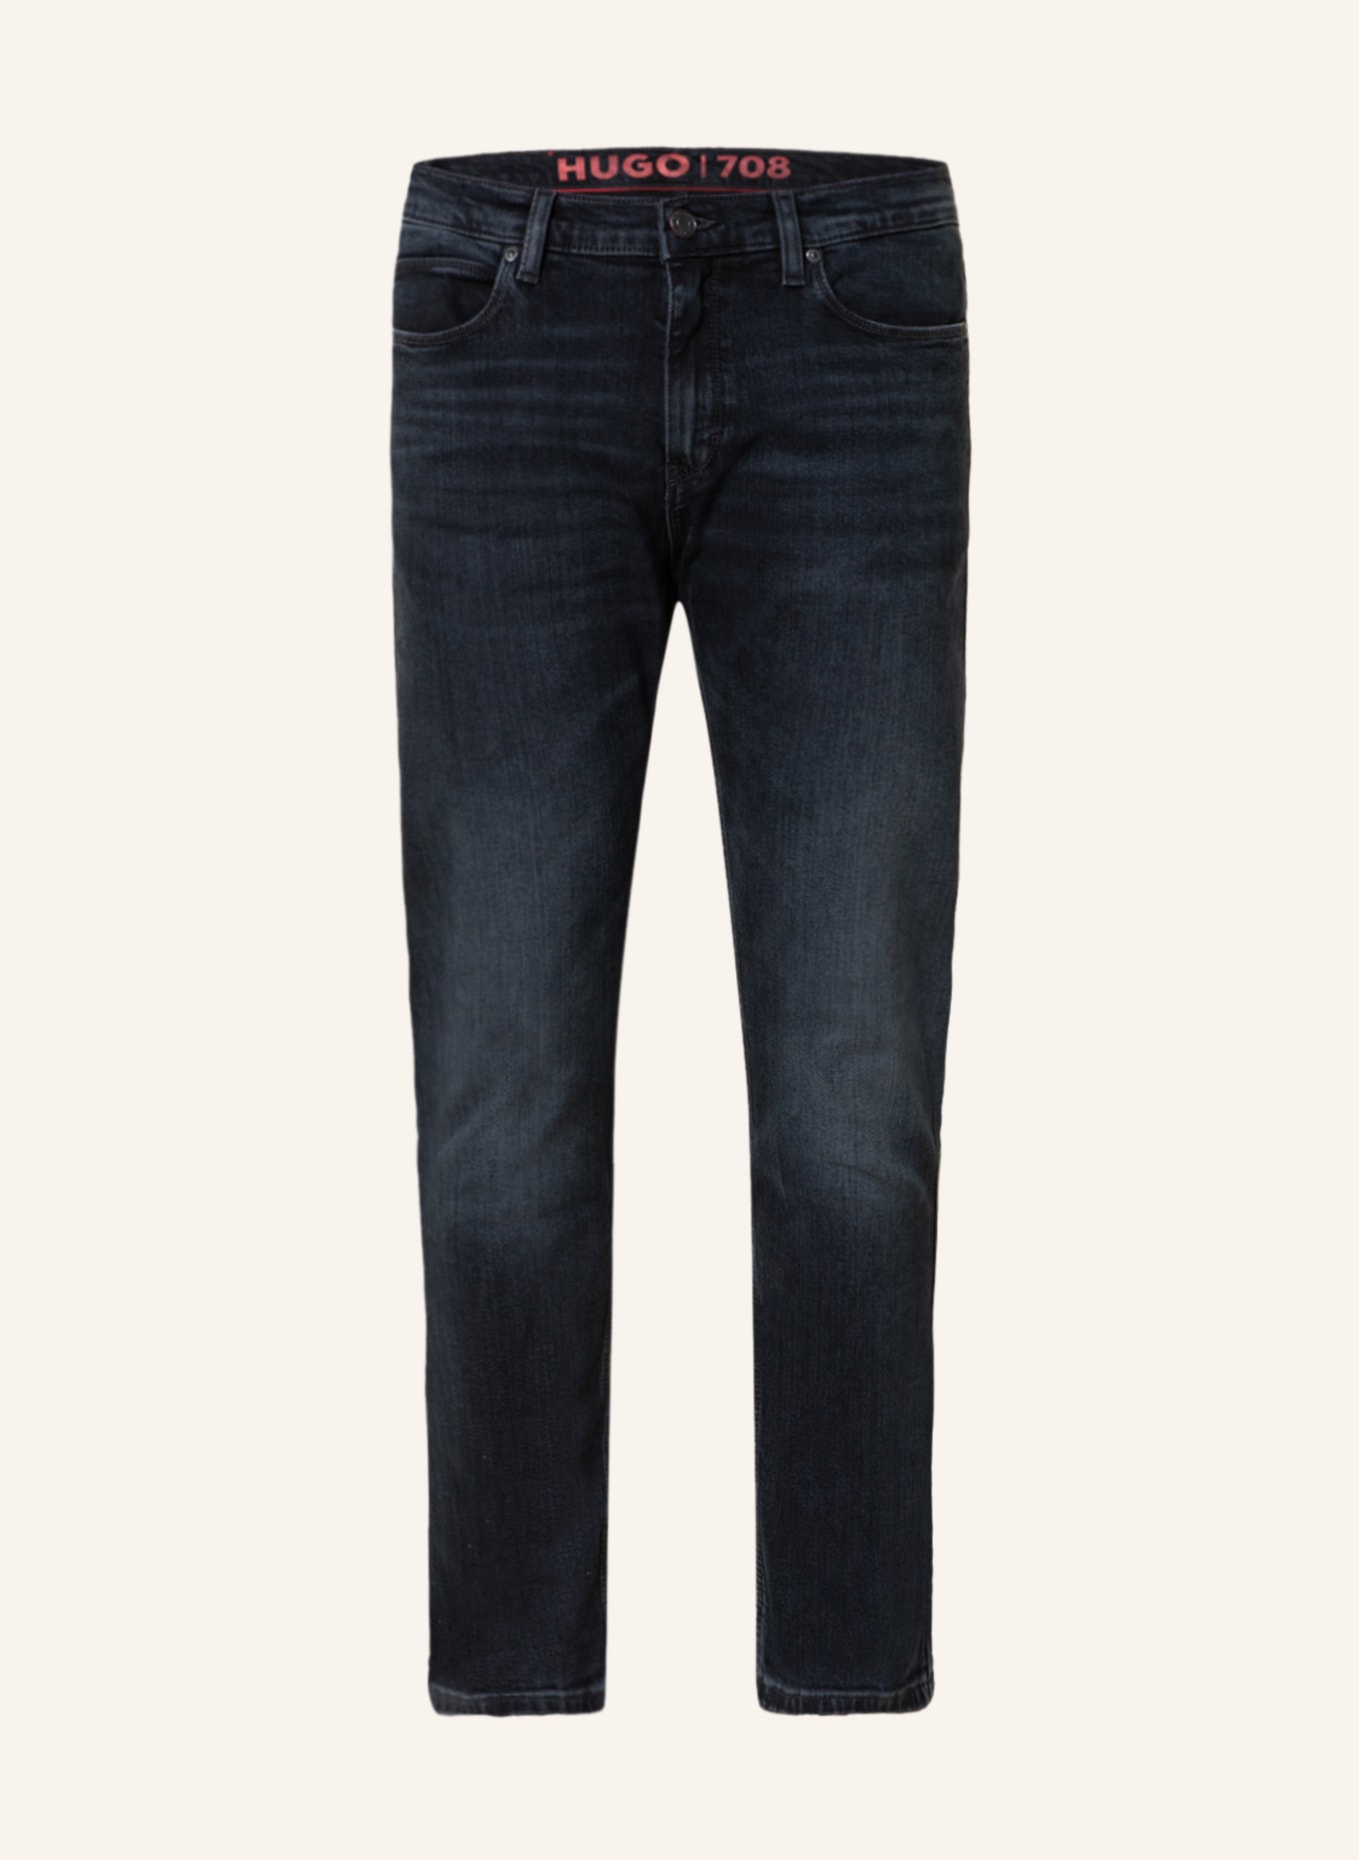 HUGO Jeans HUGO 708 Slim Fit, Farbe: 410 NAVY (Bild 1)